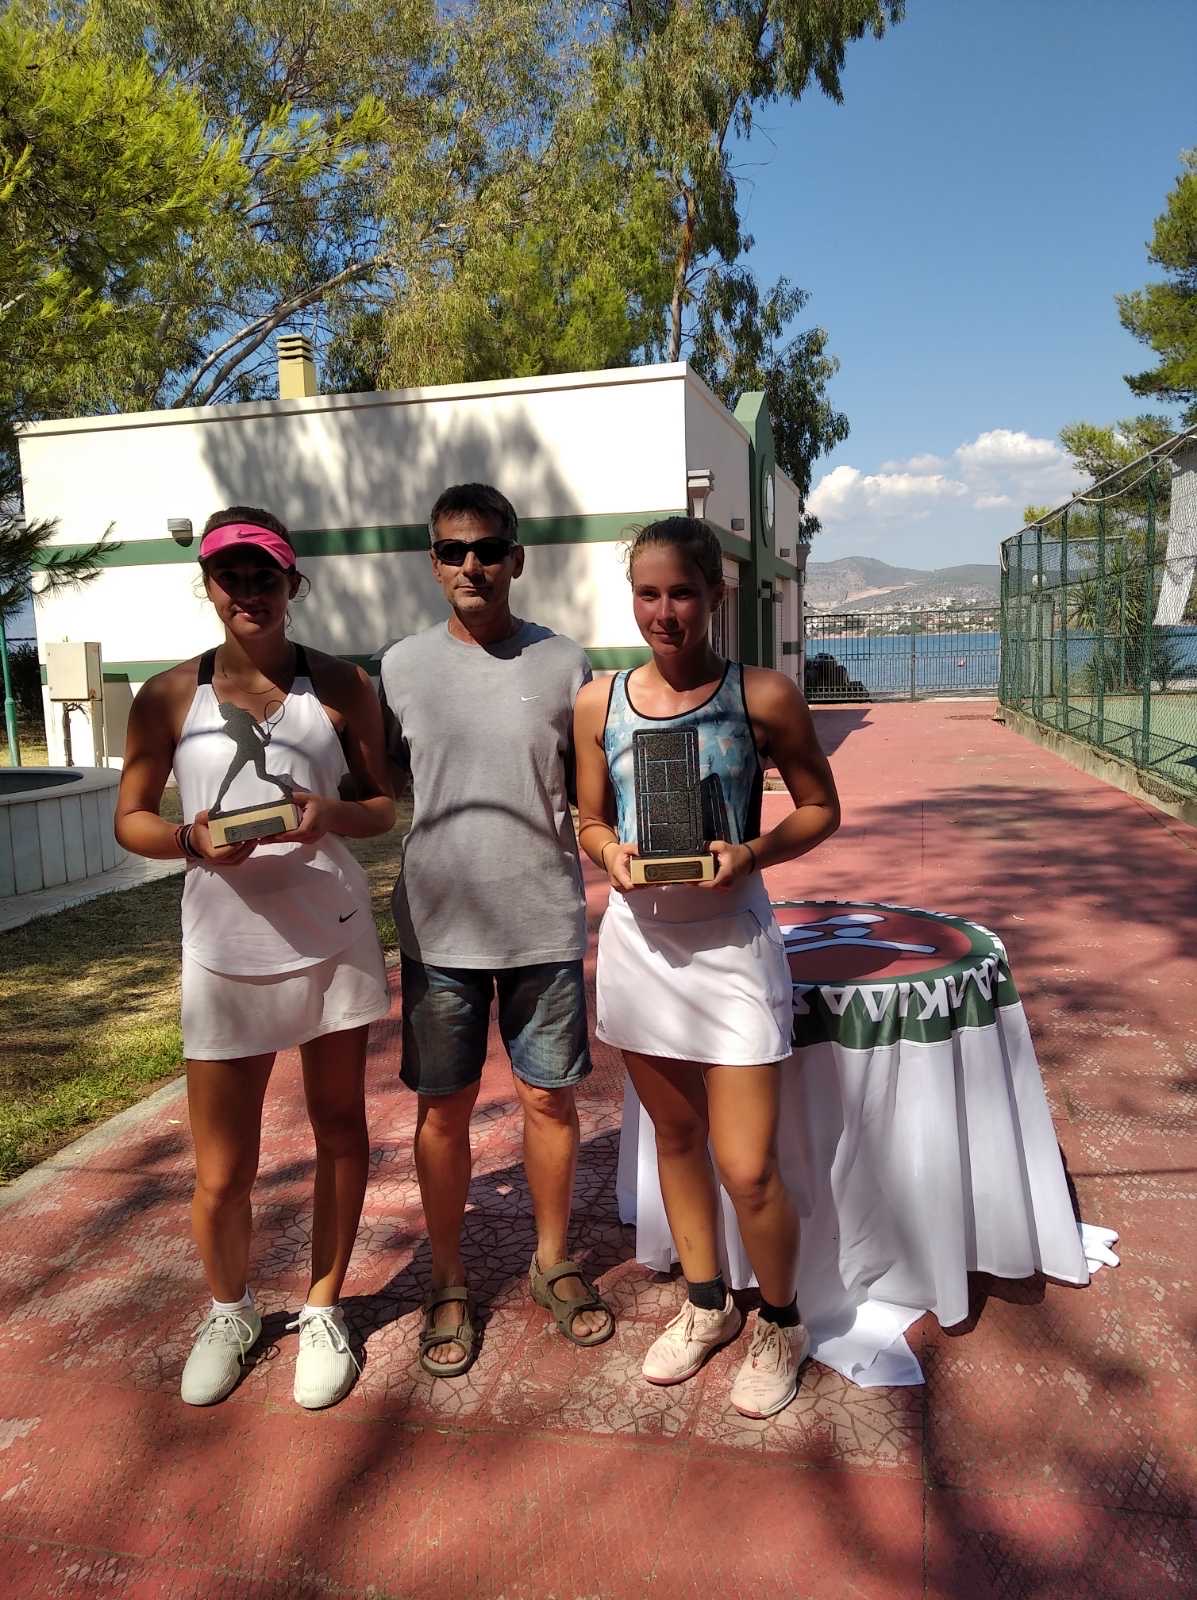 Με οργανωτική και αγωνιστική επιτυχία διεξήχθη το Πρωτάθλημα Τένις Ε3΄της Θ΄ Ένωσης στις εγκαταστάσεις του ΟΑΧ στη Λιανή Άμμο [εικόνες]